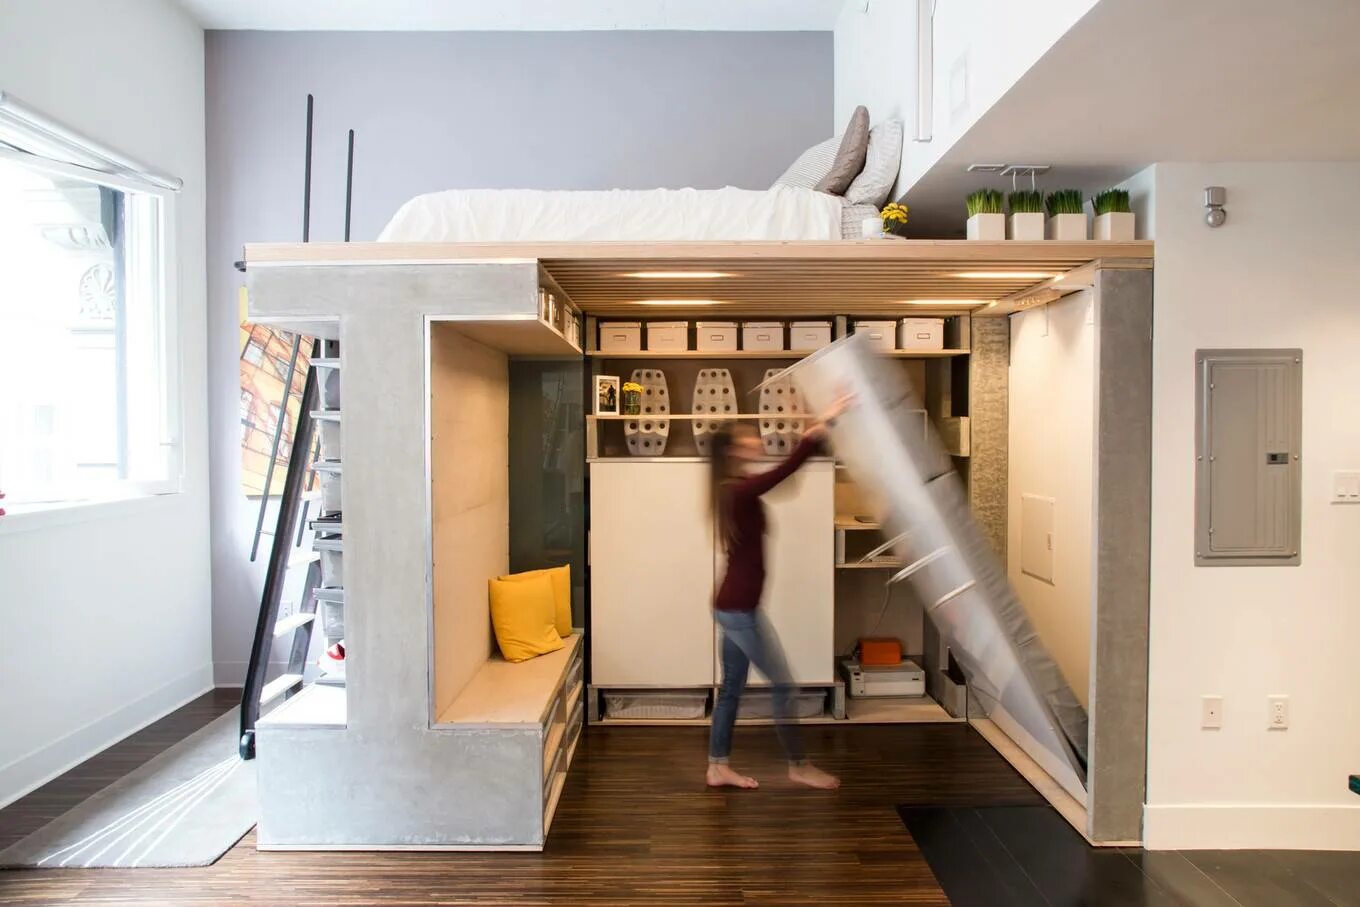 Тини Хаус откидная кровать. Дизайнерские решения для дома. Кровать чердак для маленькой квартиры. Интерьерные решения для маленькой квартиры. Использовать его в жилом помещении